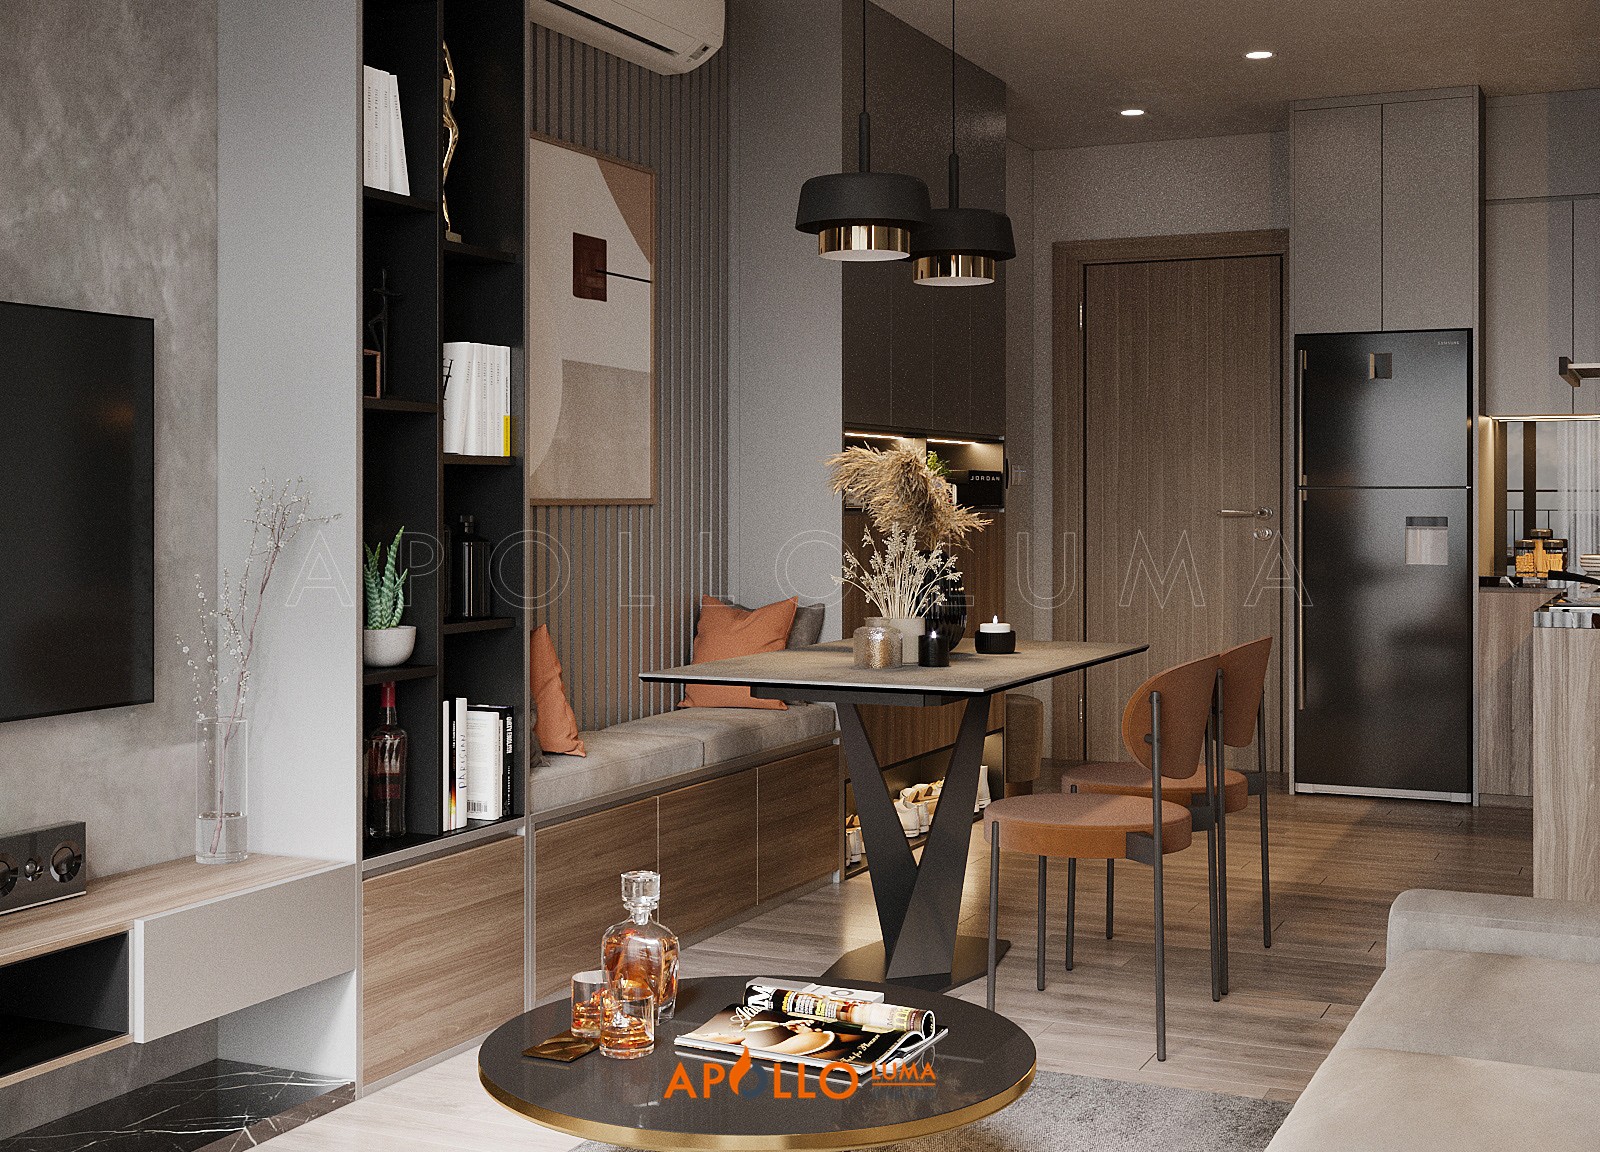 Khám phá nội thất phong cách đương đại căn hộ Vinhomes Smart City sang trọng